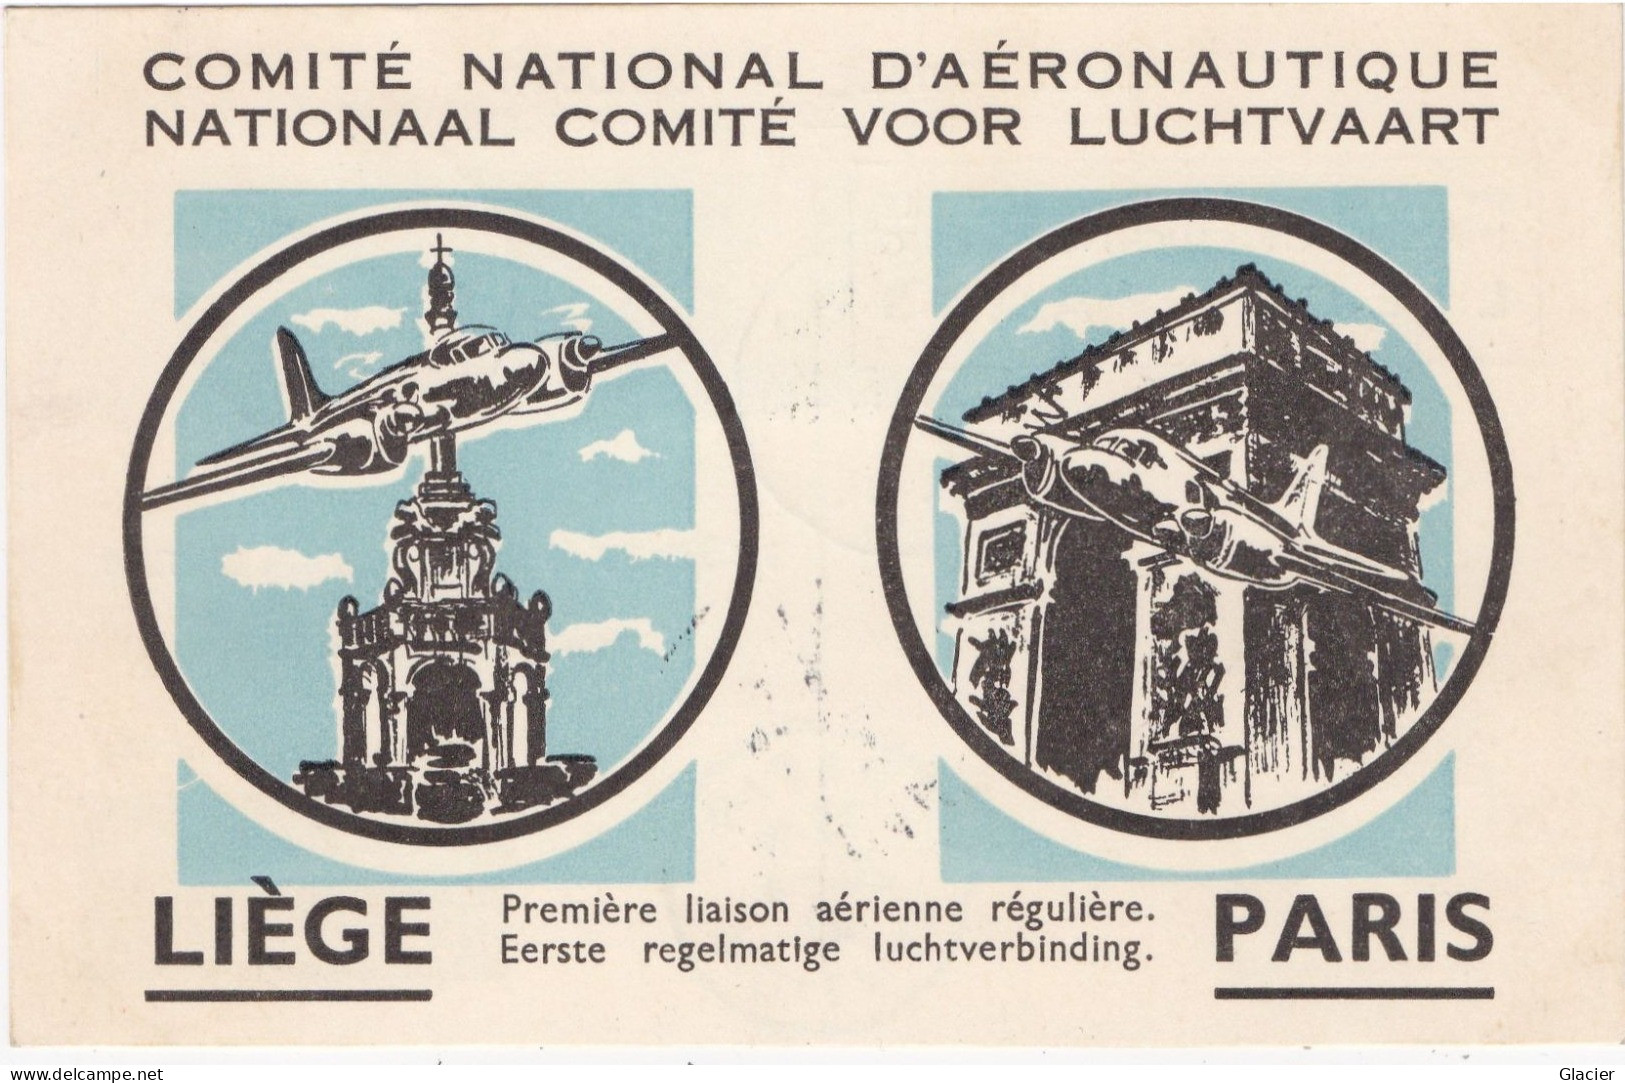 1er Vol LIEGE-PARIS Par Sabena Cachet Comité National D'Aéronautique 20-4-19 - Lettres & Documents